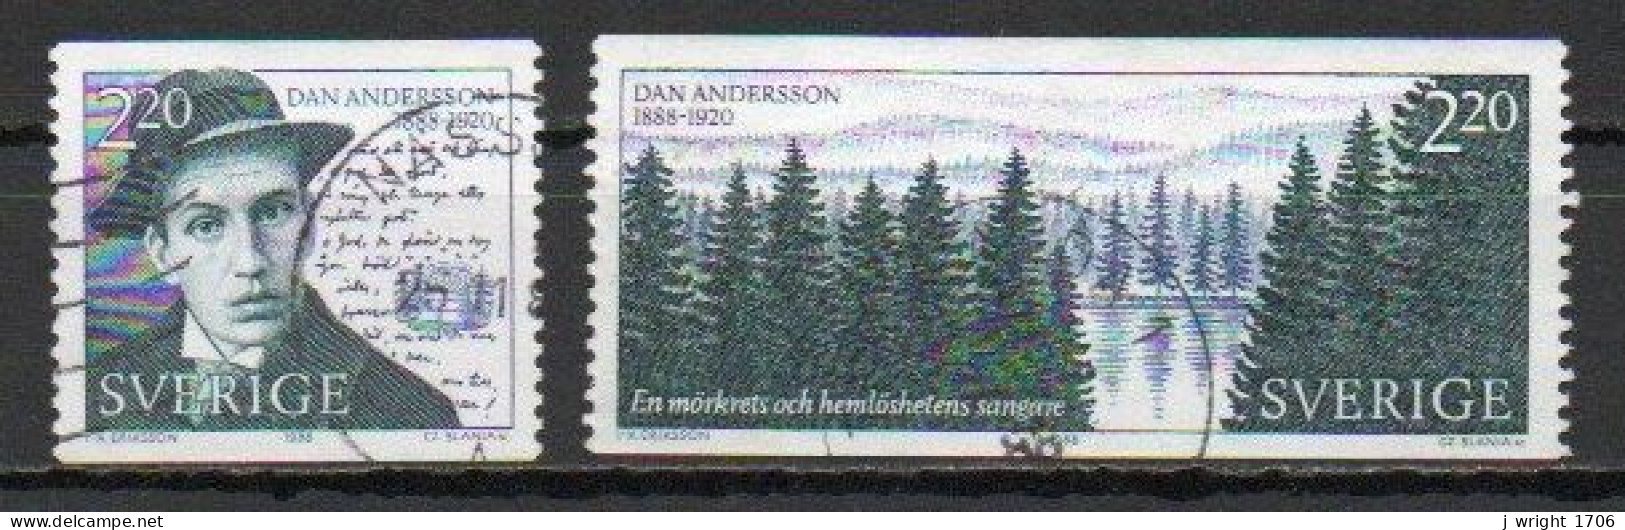 Sweden, 1988, Dan Andersson, Set, USED - Gebruikt